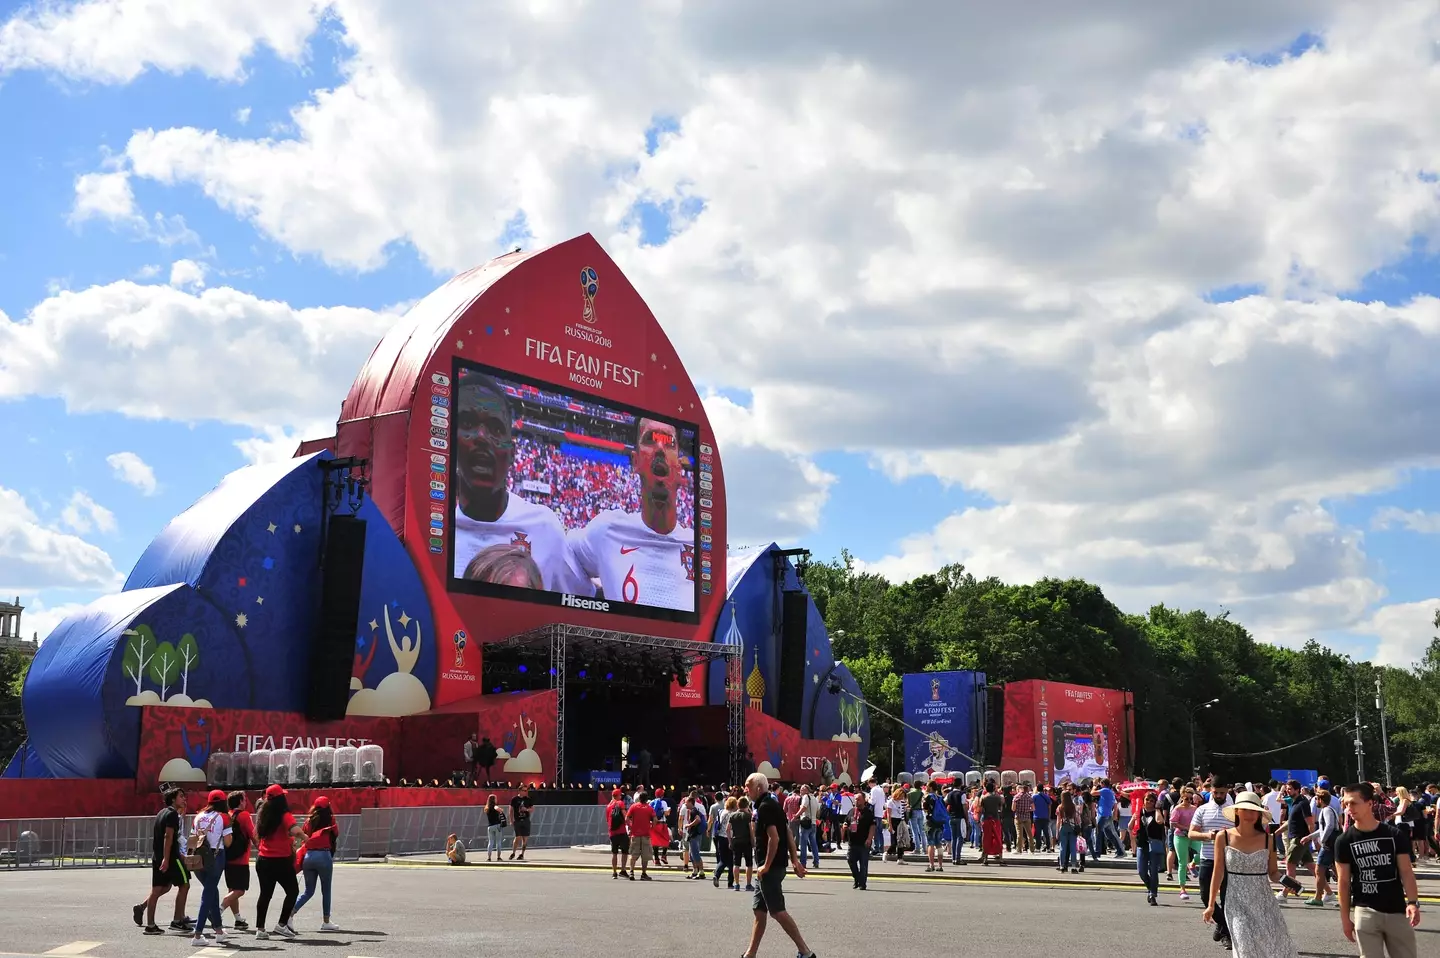 FIFA Fan Fest in Russia.